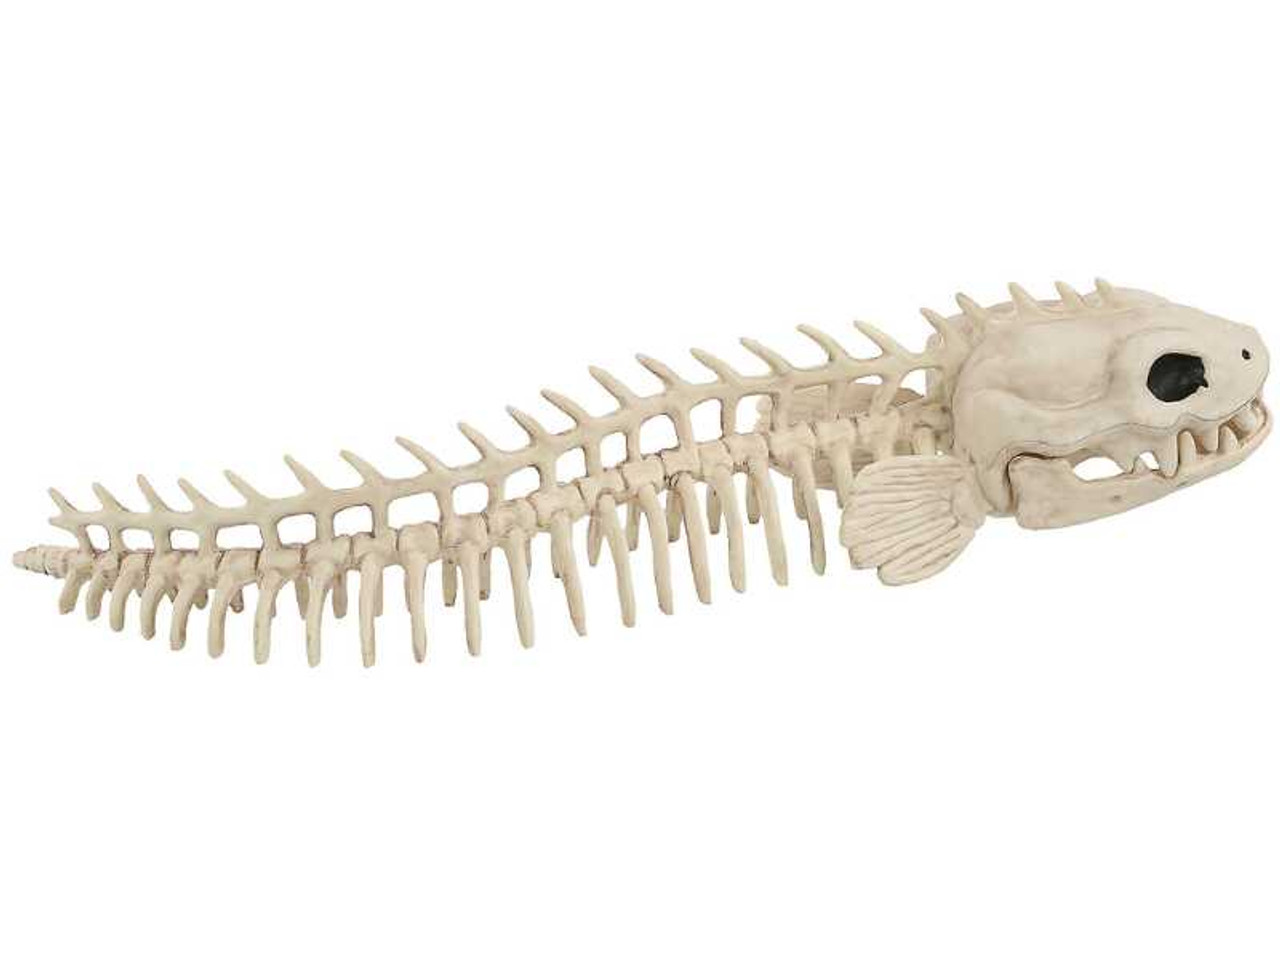 Skeleton Eel Prop